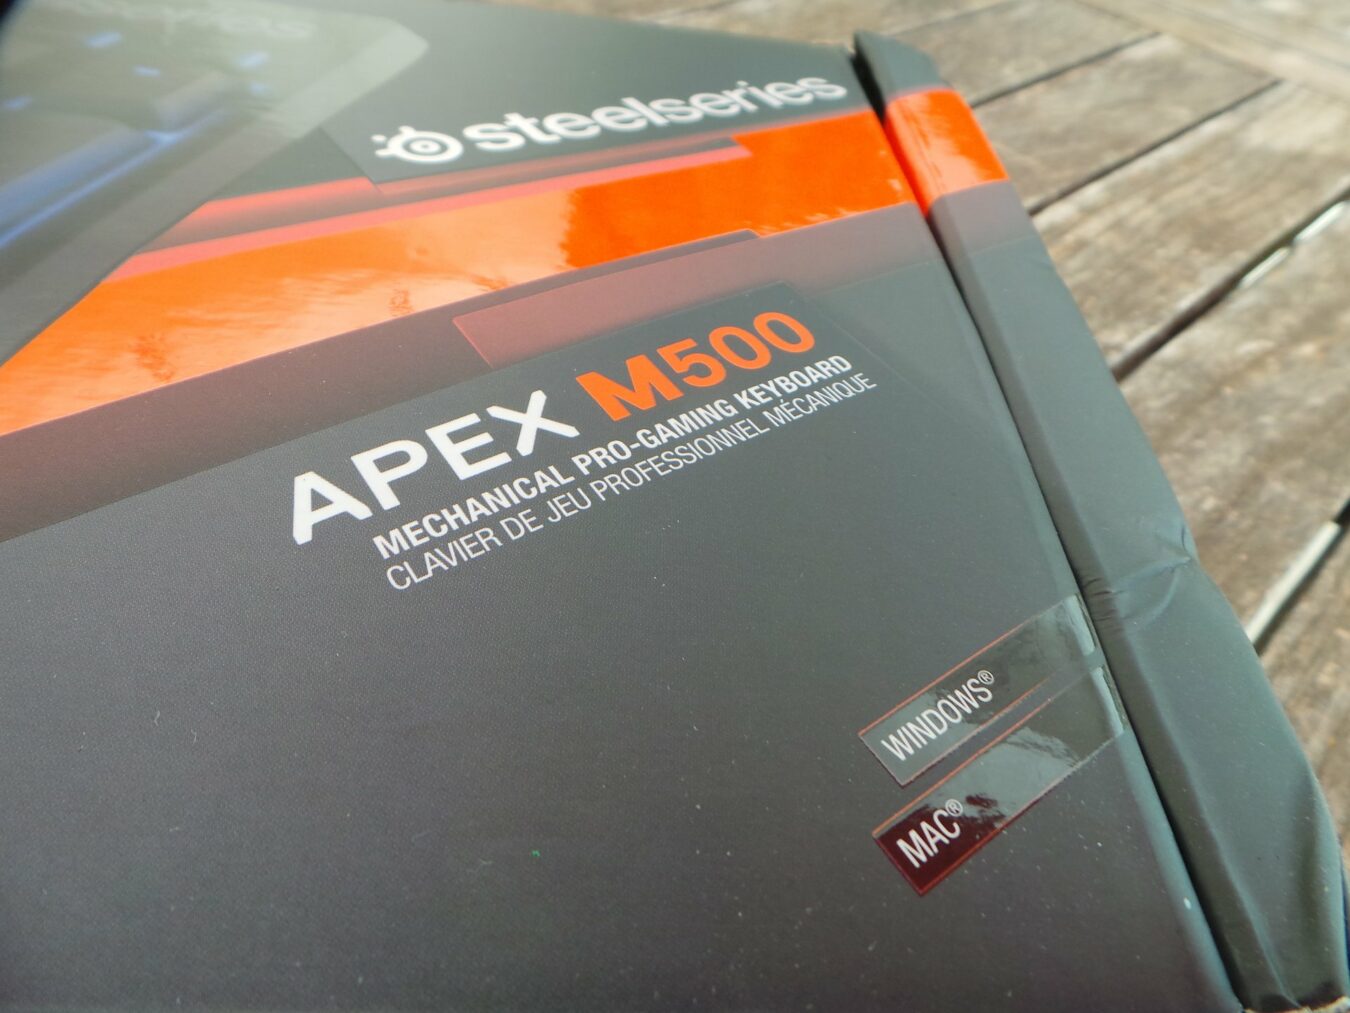 m500 20160720 165050 scaled [TEST] Steelseries Apex M500 – Quand simplicité rime avec efficacité apex